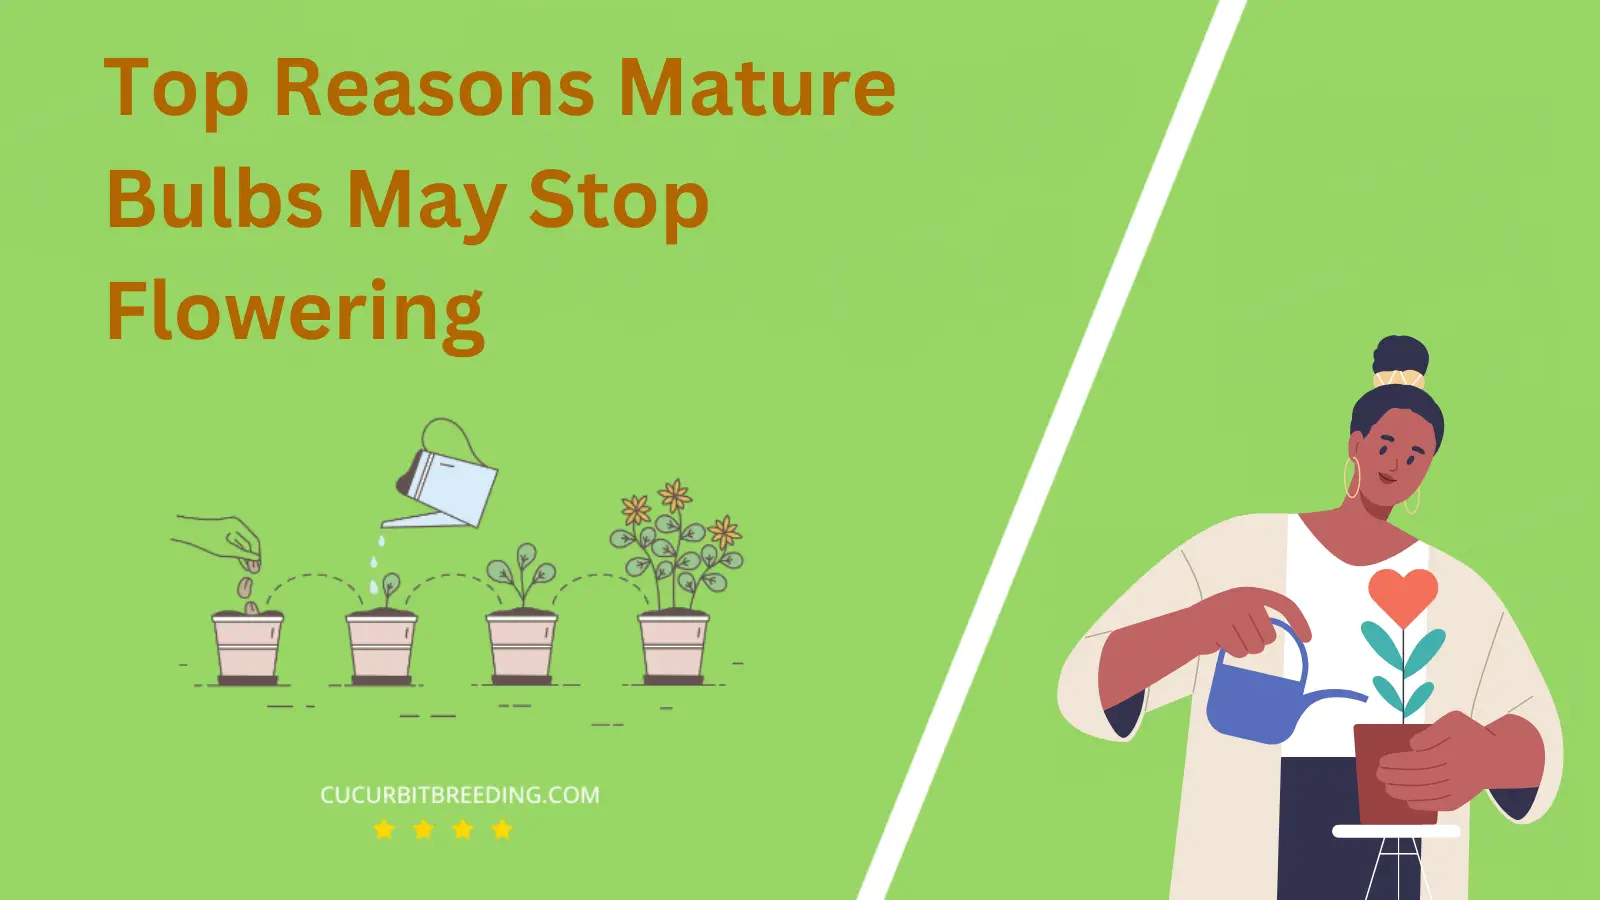 Top Reasons Mature Bulbs May Stop Flowering